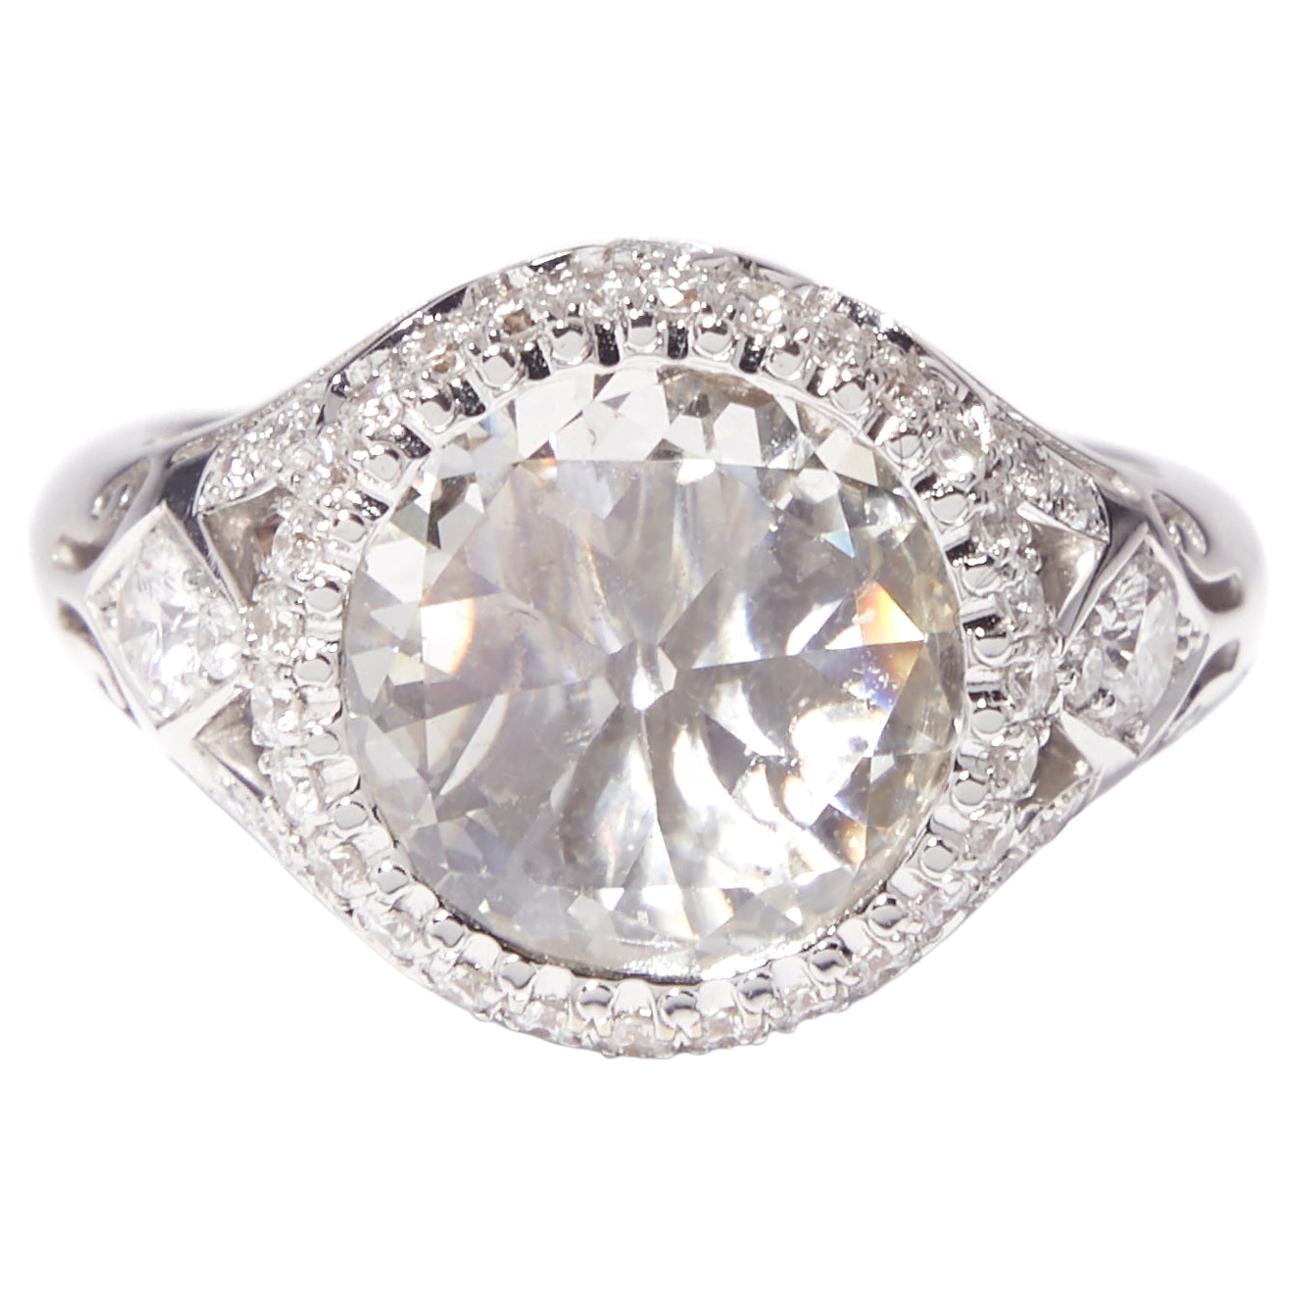 2.65 Carat Old European Cut Diamond Engagement Ring in 18 Karat White Gold